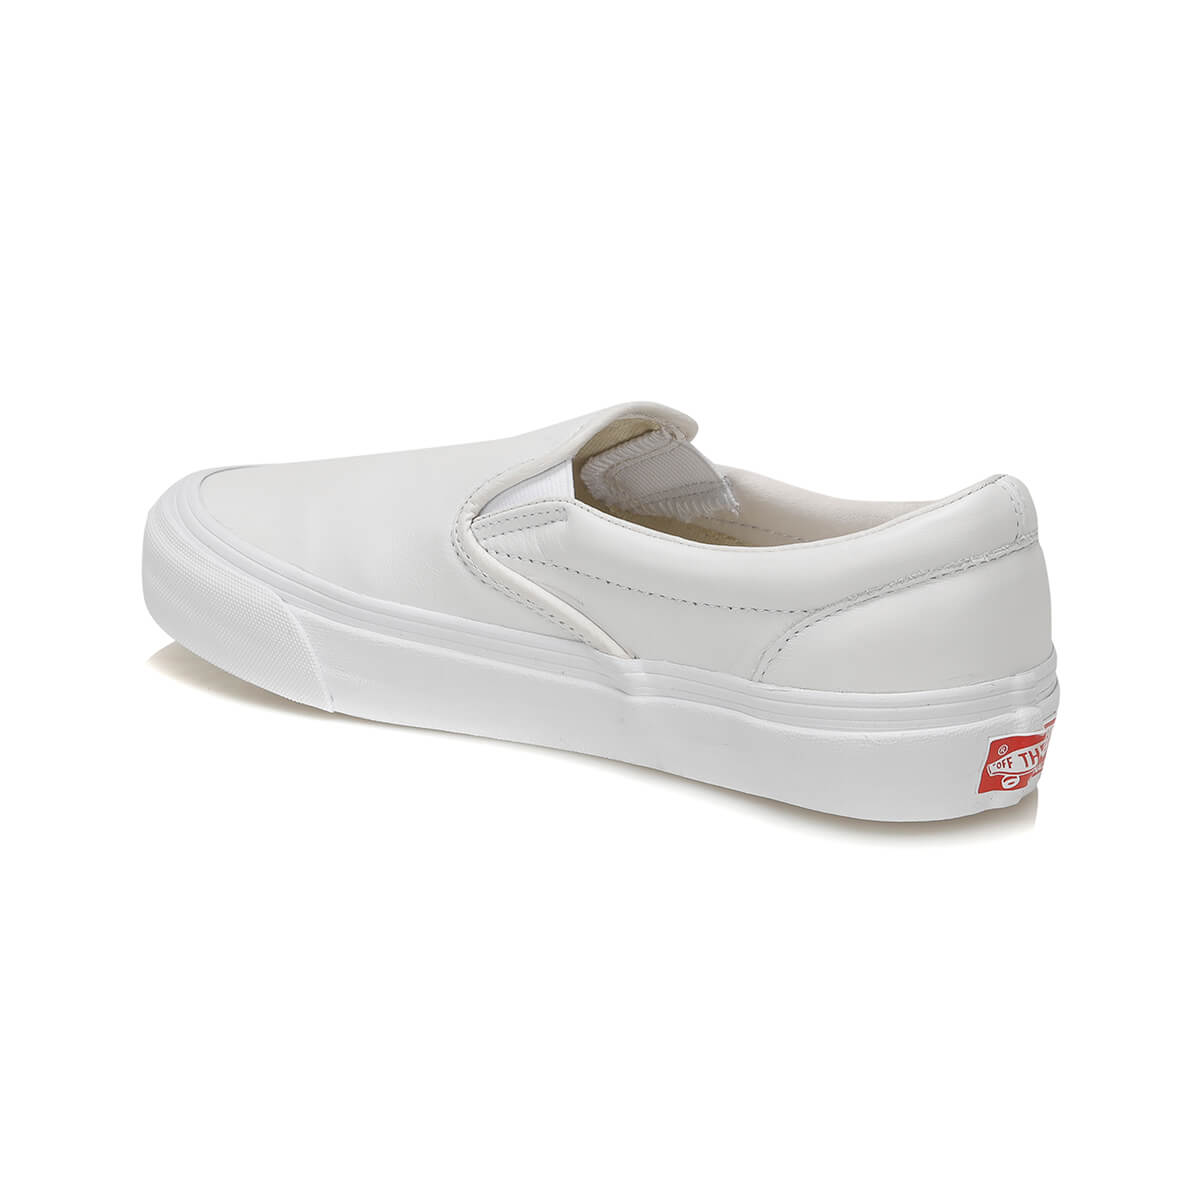 Flo OG CLASSIC LX Beyaz Kadın Sneaker Ayakkabı. 1